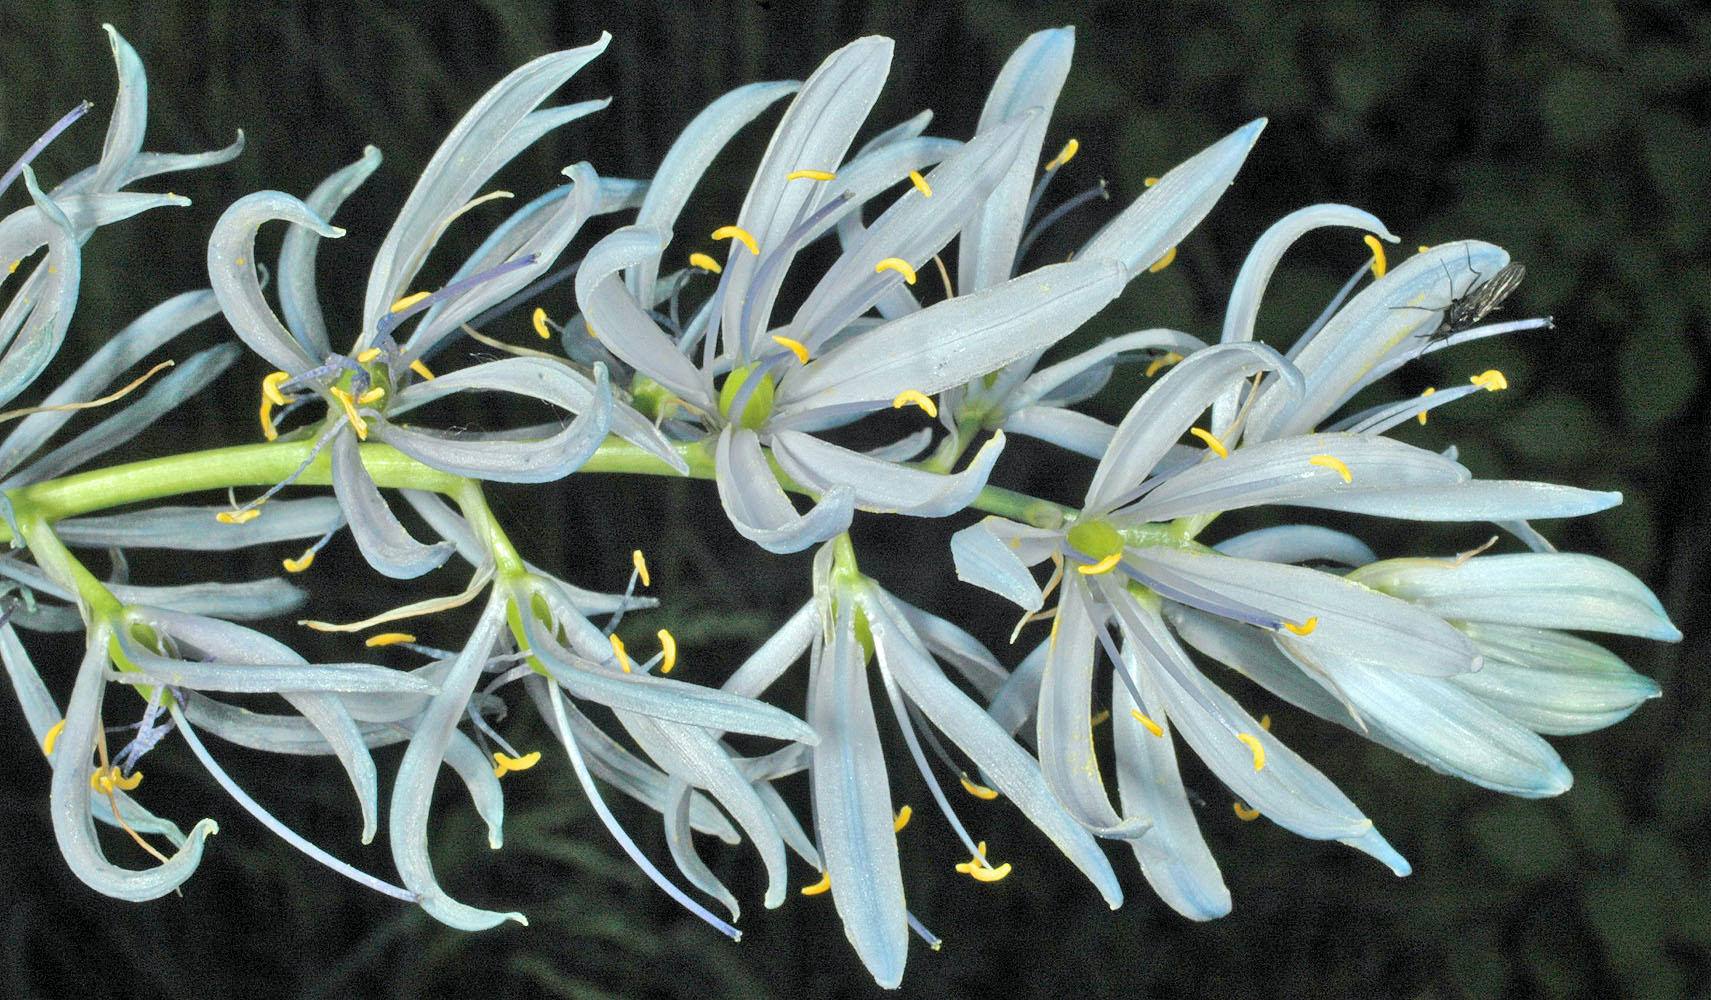 Flora of Eastern Washington Image: Camassia quamash